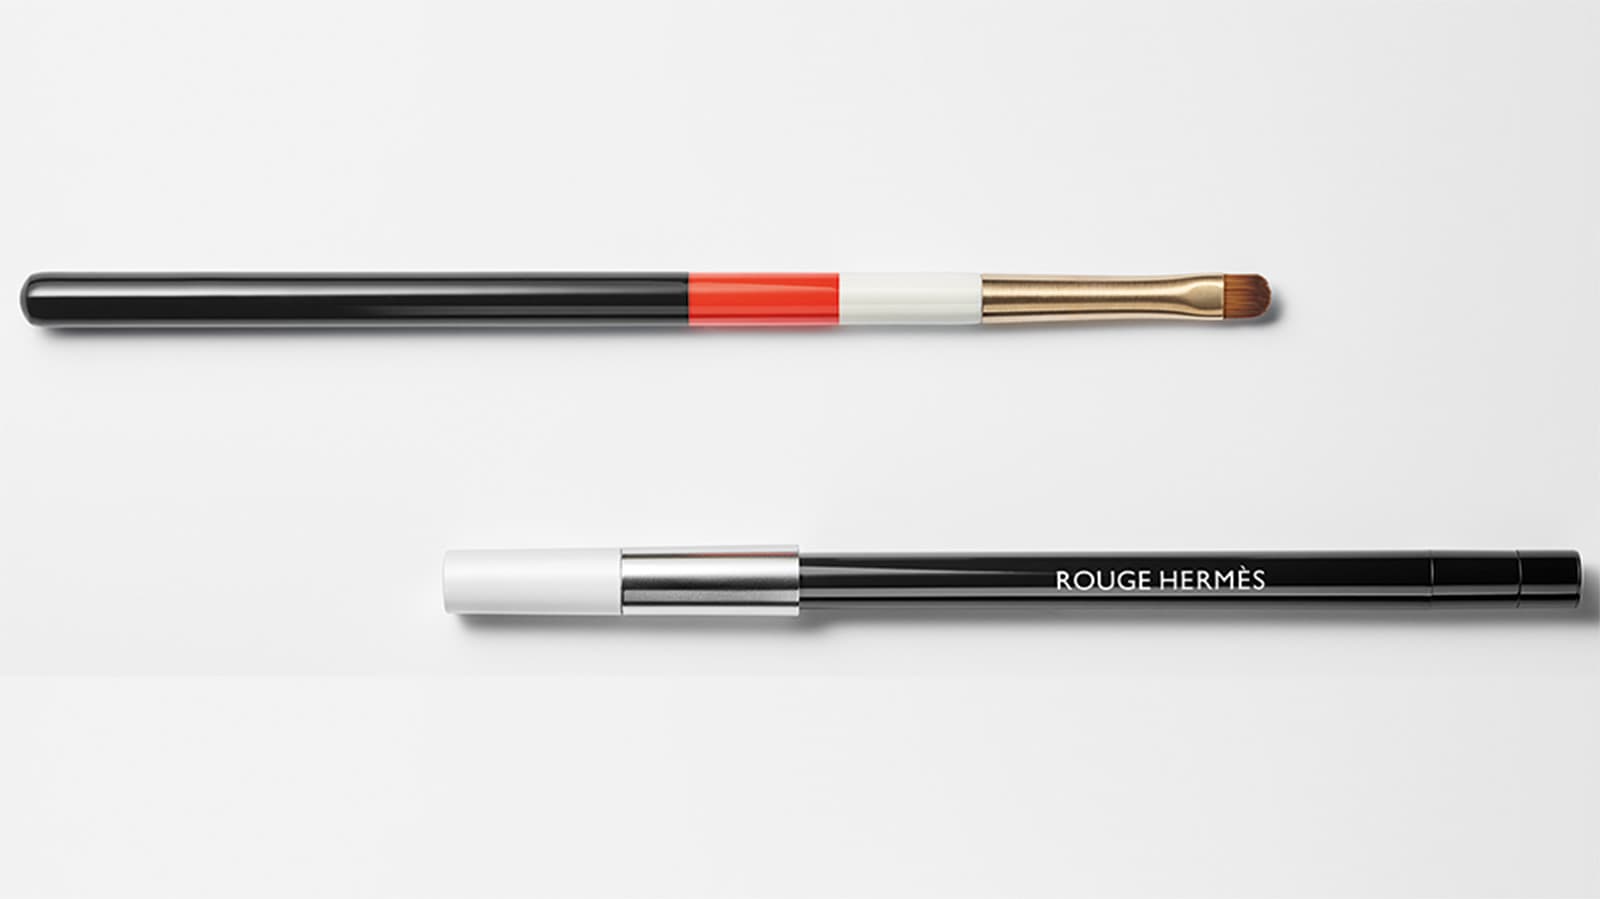 Rouge Hermès – BST tiên phong mở màn cho dòng sản phẩm làm đẹp mới của Hermès